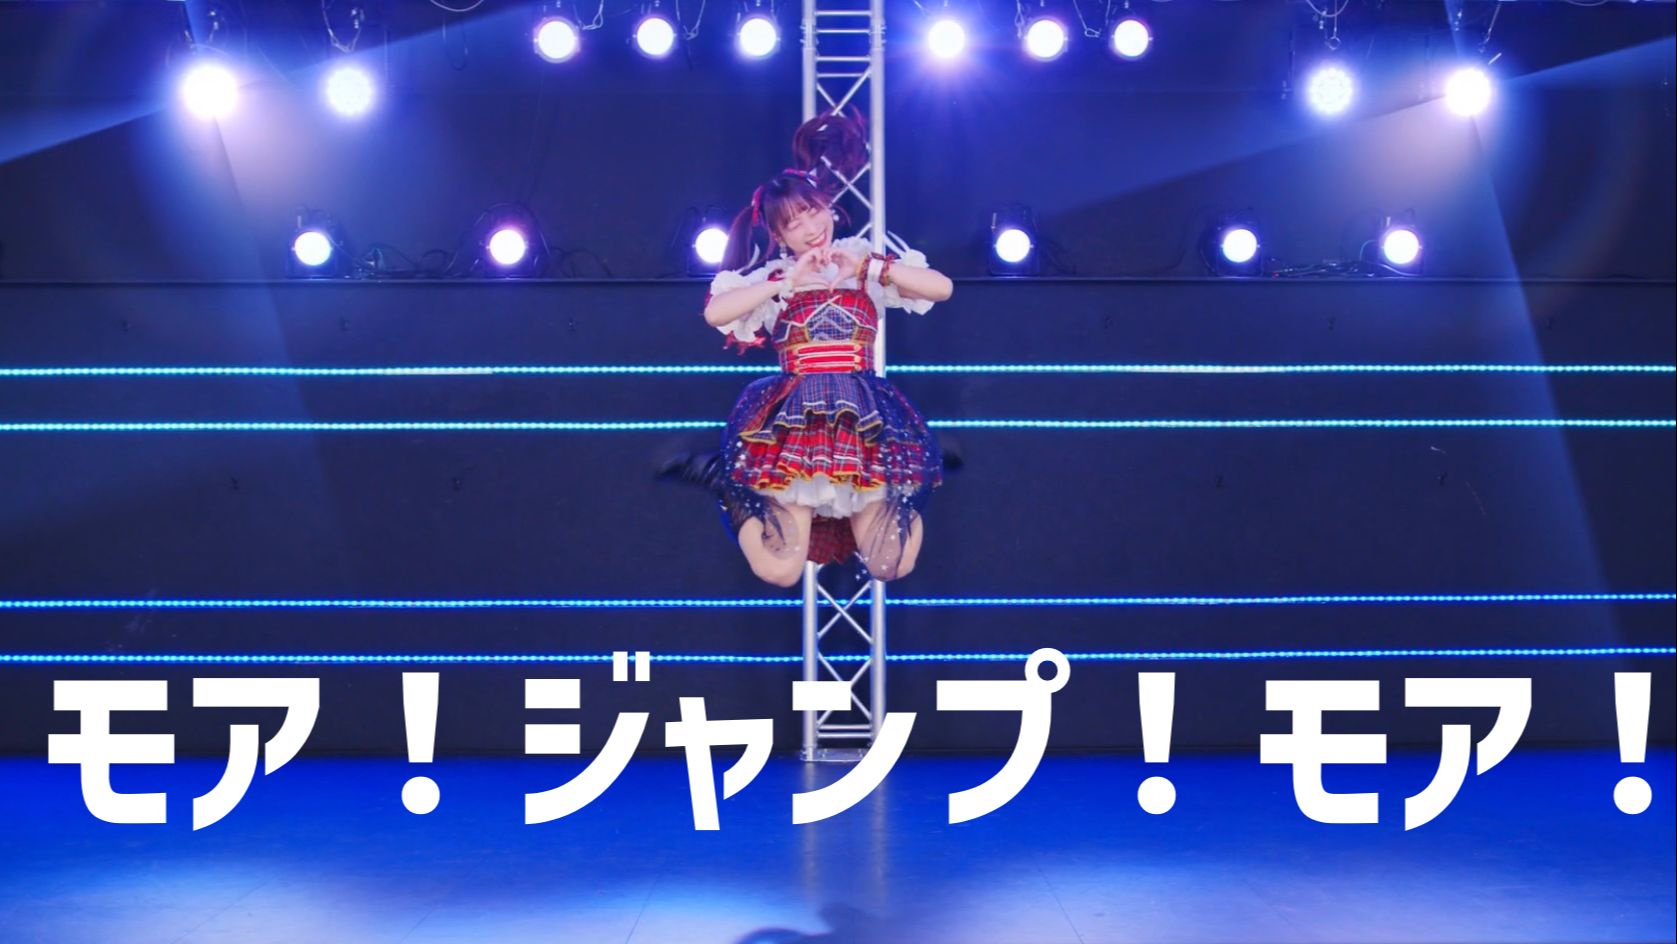 【わた(Wata)/PJSK】More！Jump！More！原创振付本家